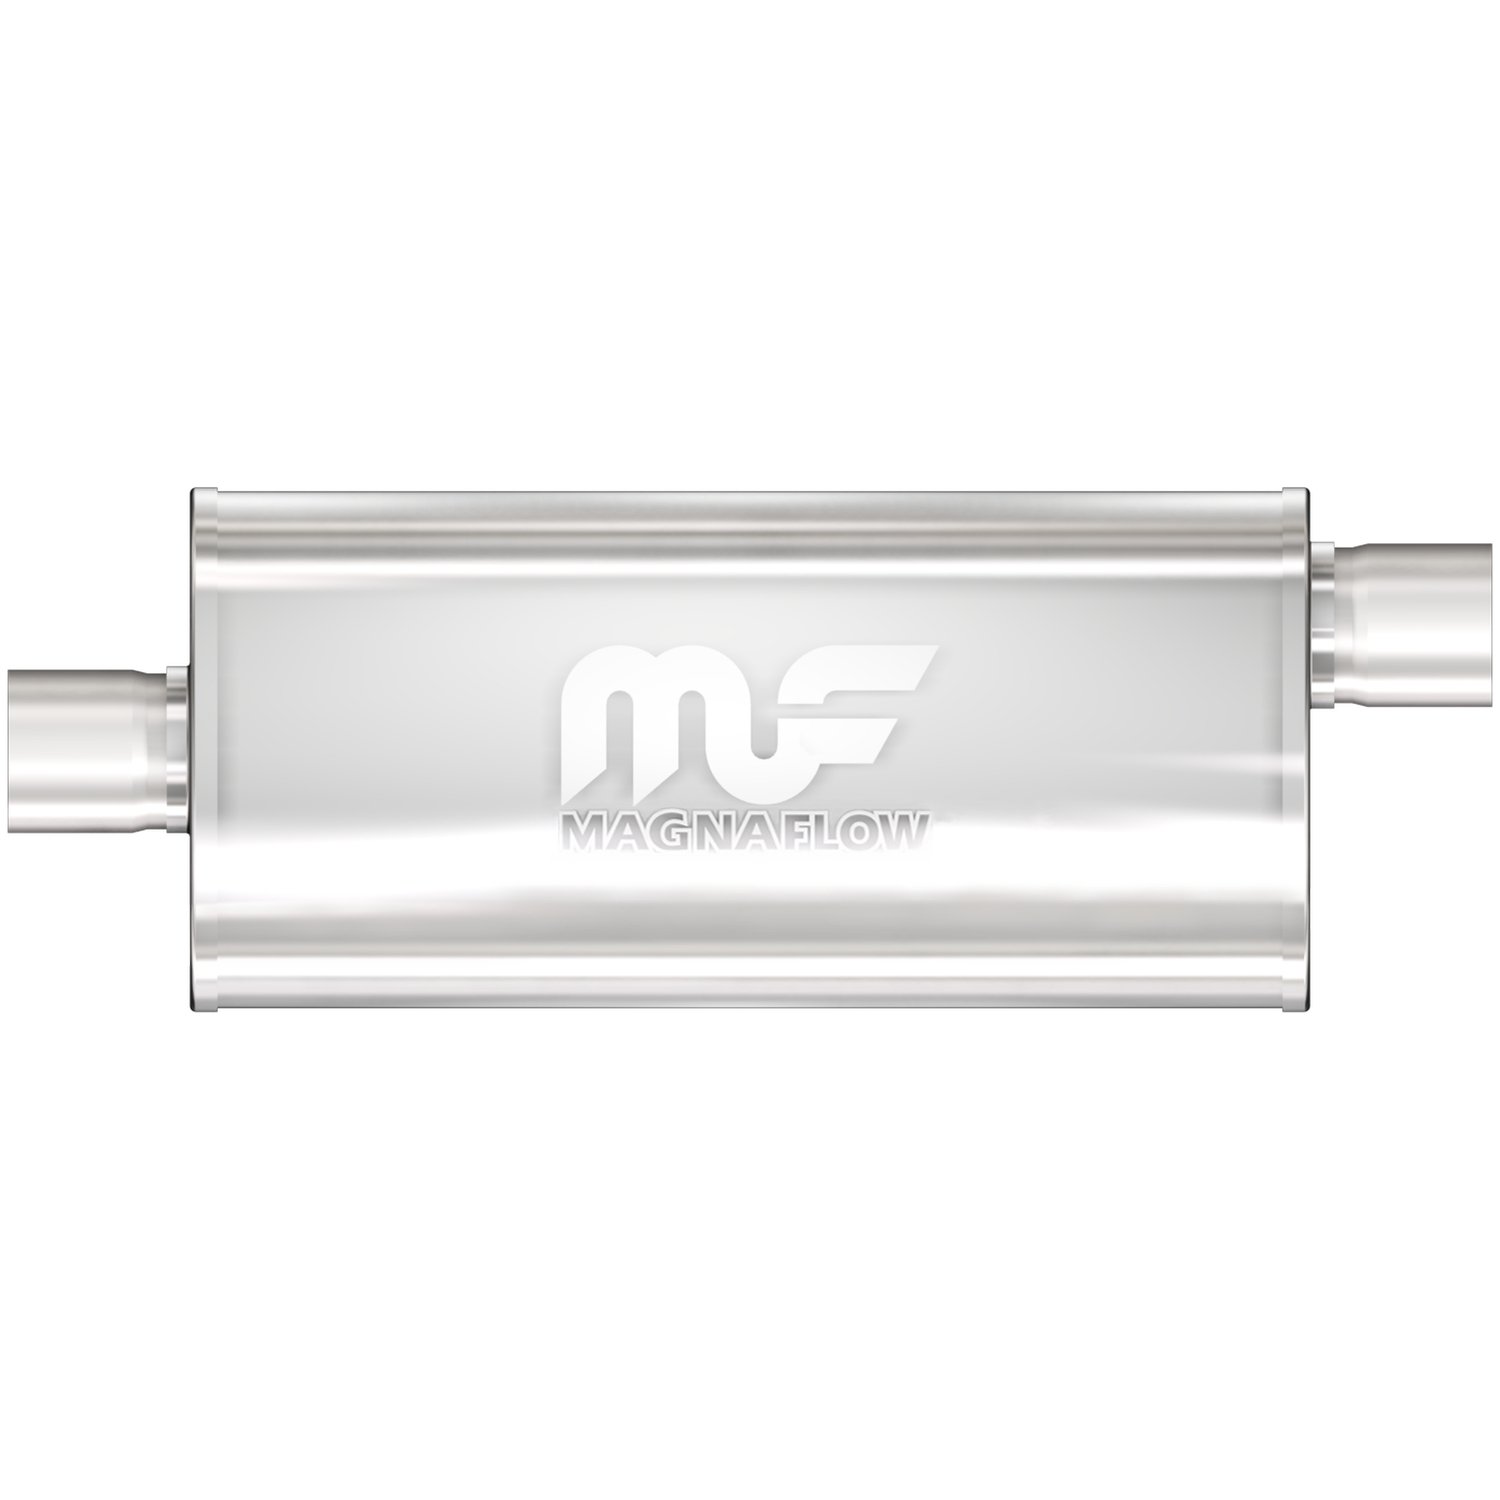 Magnaflow 12226 High-Flow Performance Muffler 5x8x14 Oval 2.5" Offset/Center